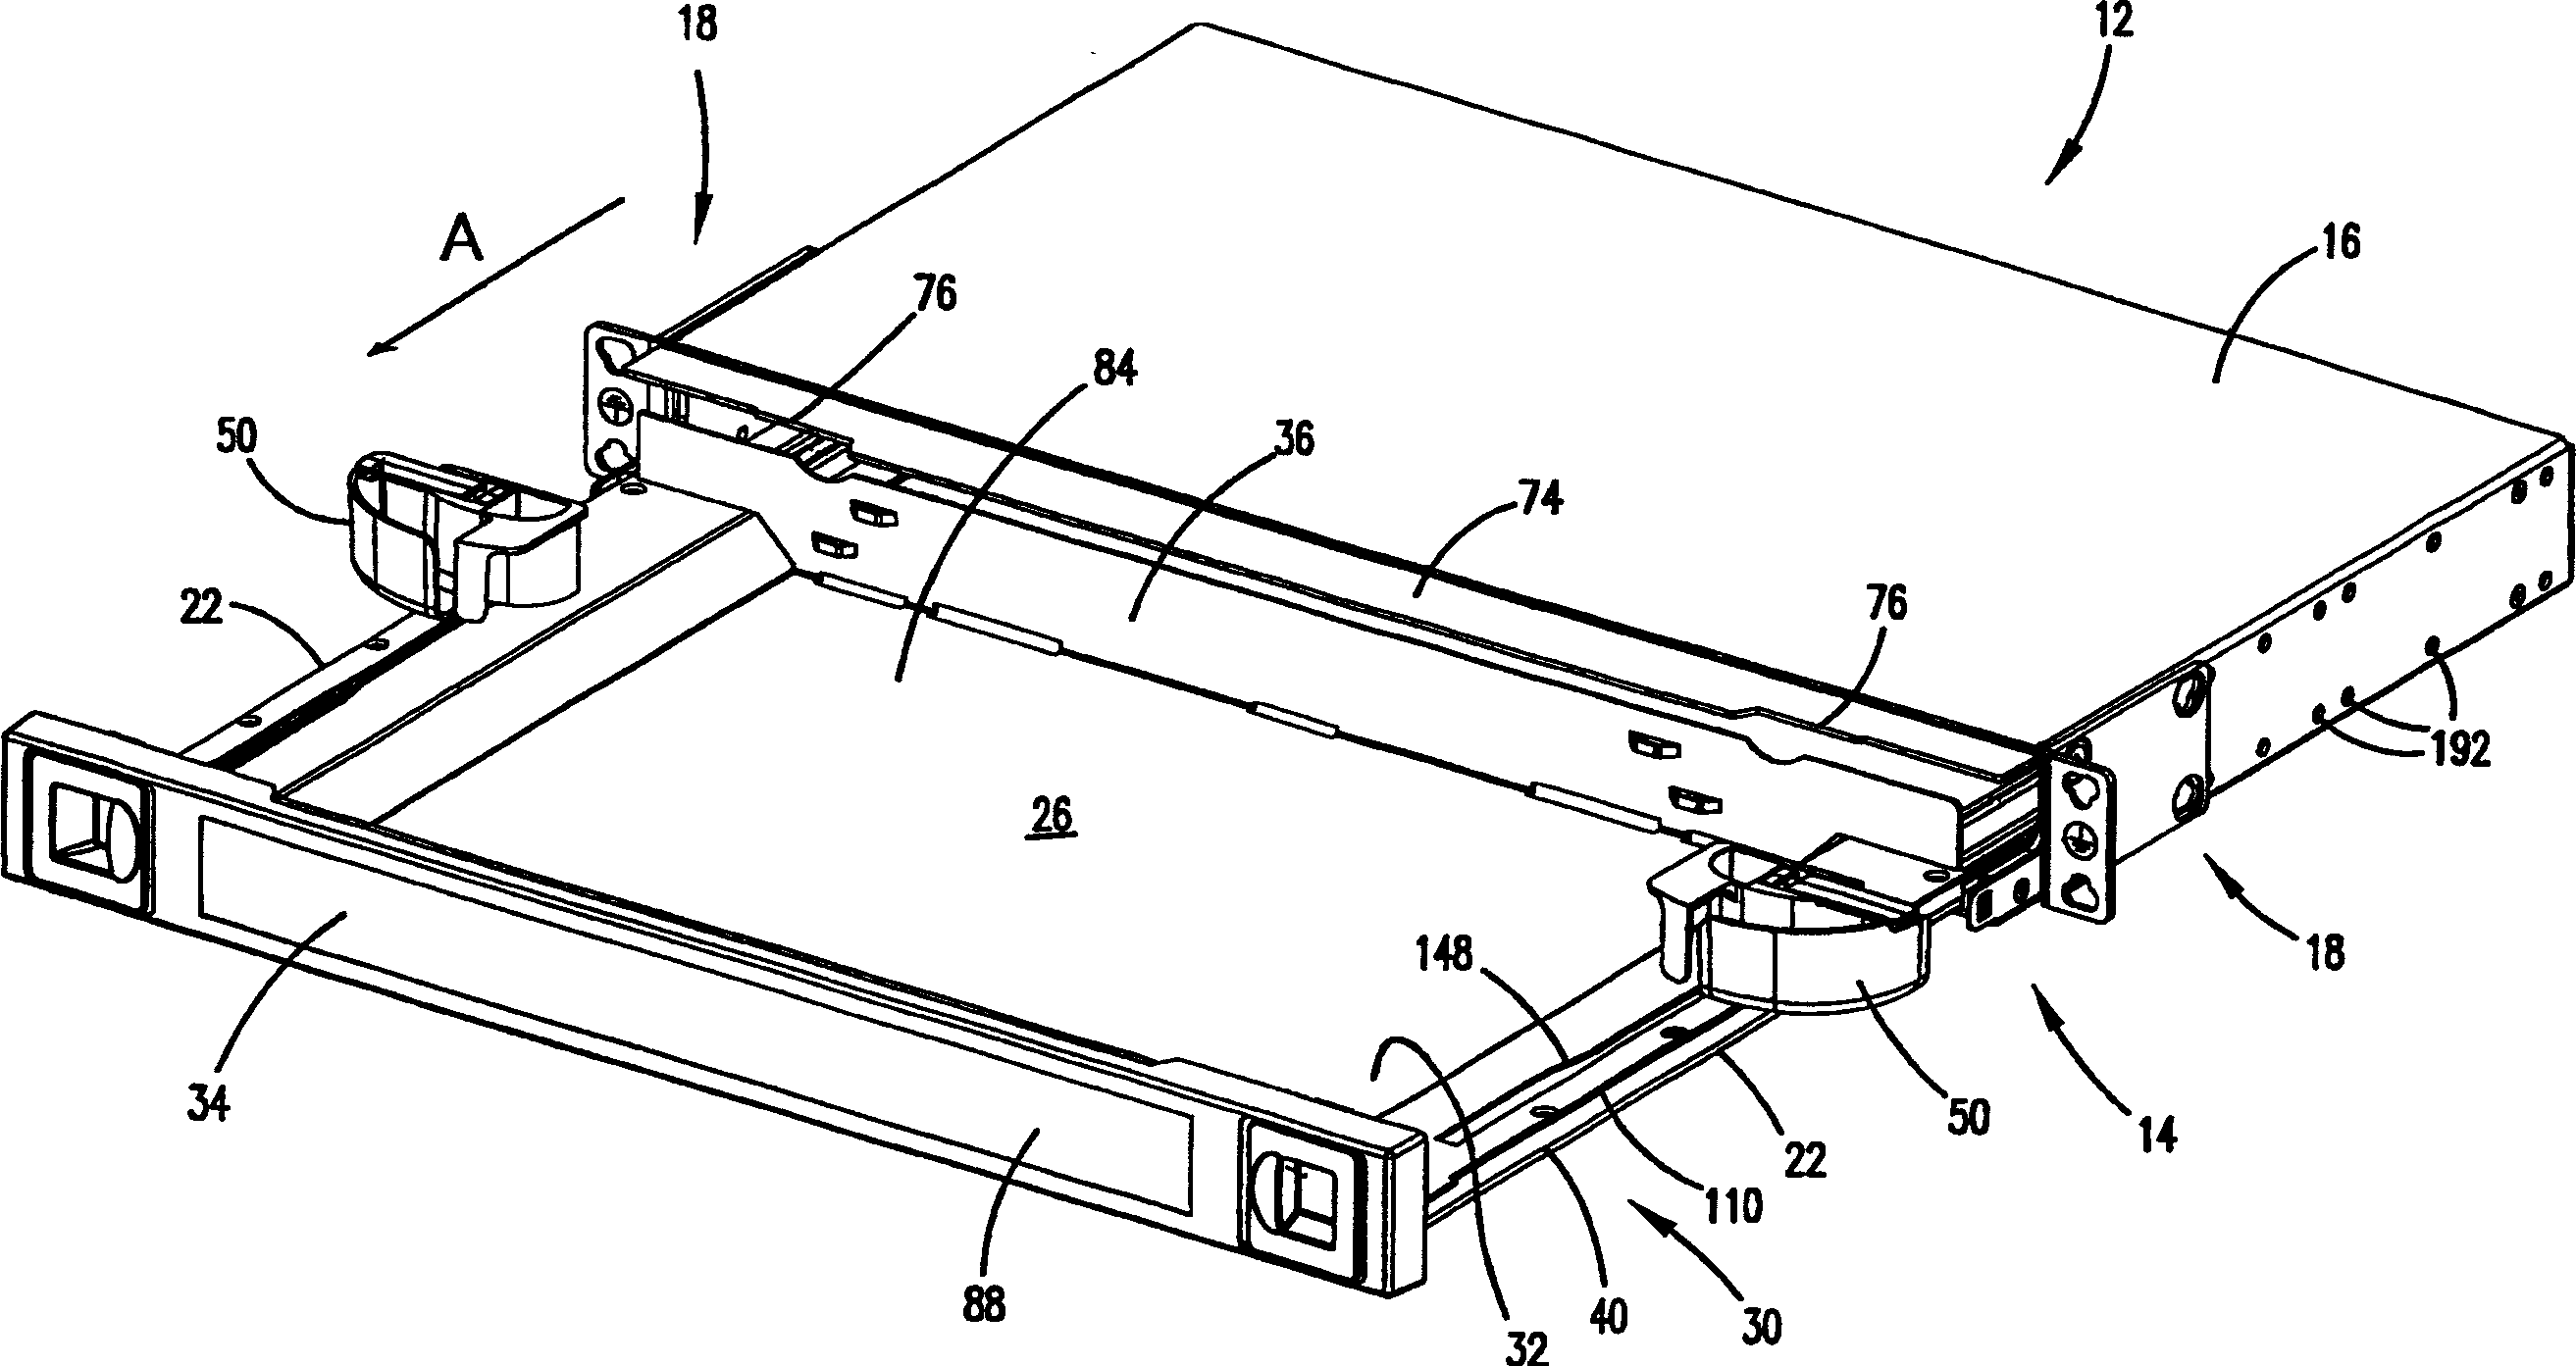 Slide arrangement for cable drawer